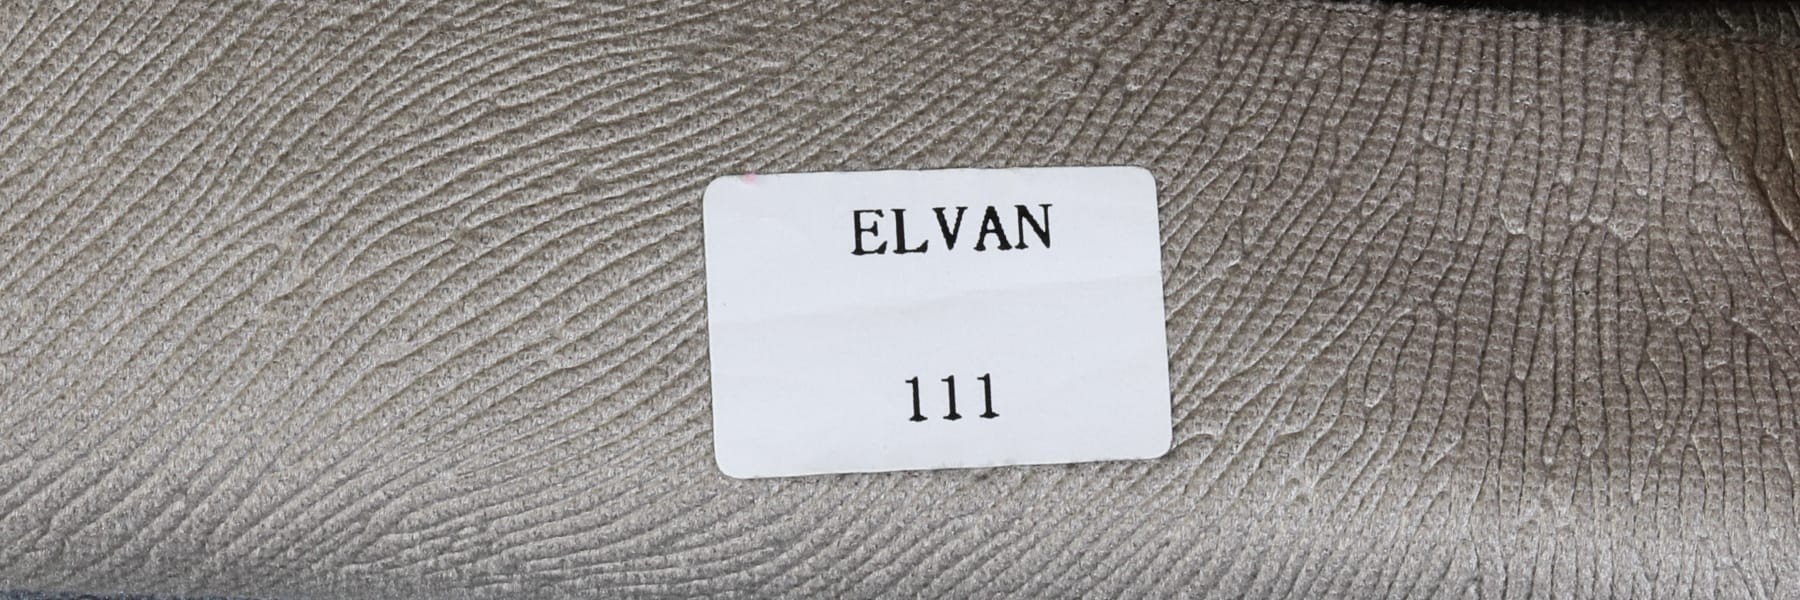 VİZYON ELVAN ELVAN 111